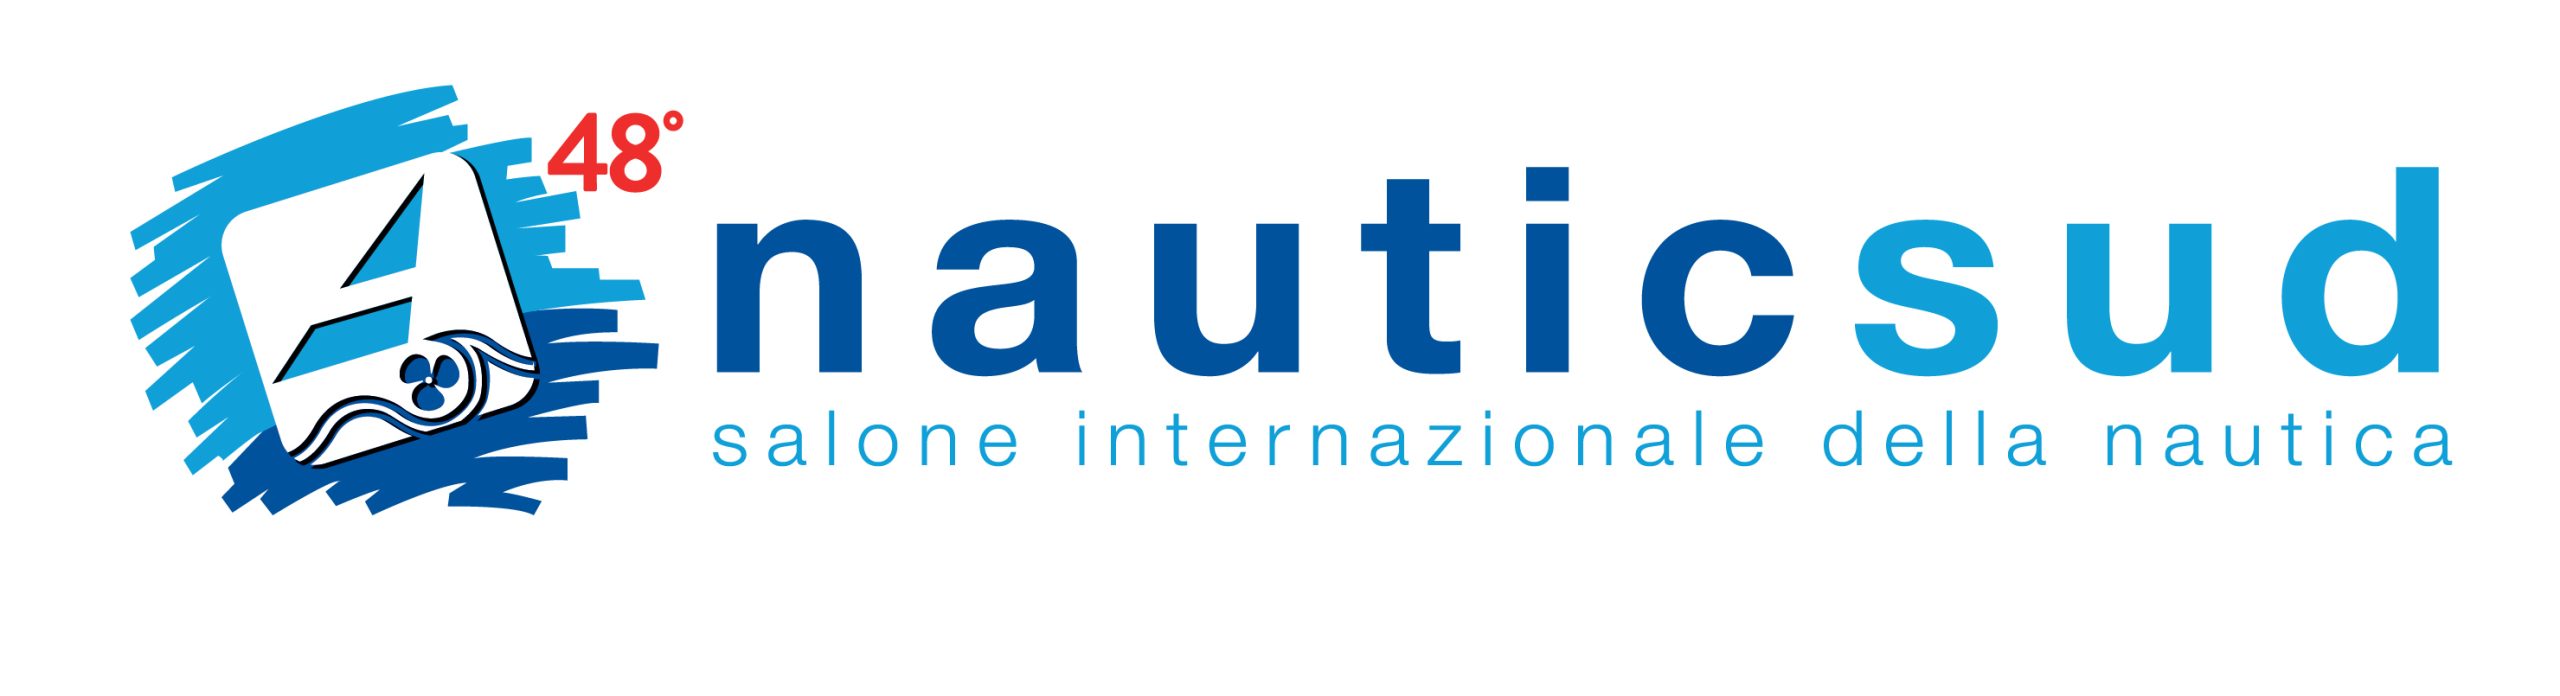 Napoli: presentazione 48° Nauticsud, conferenza stampa